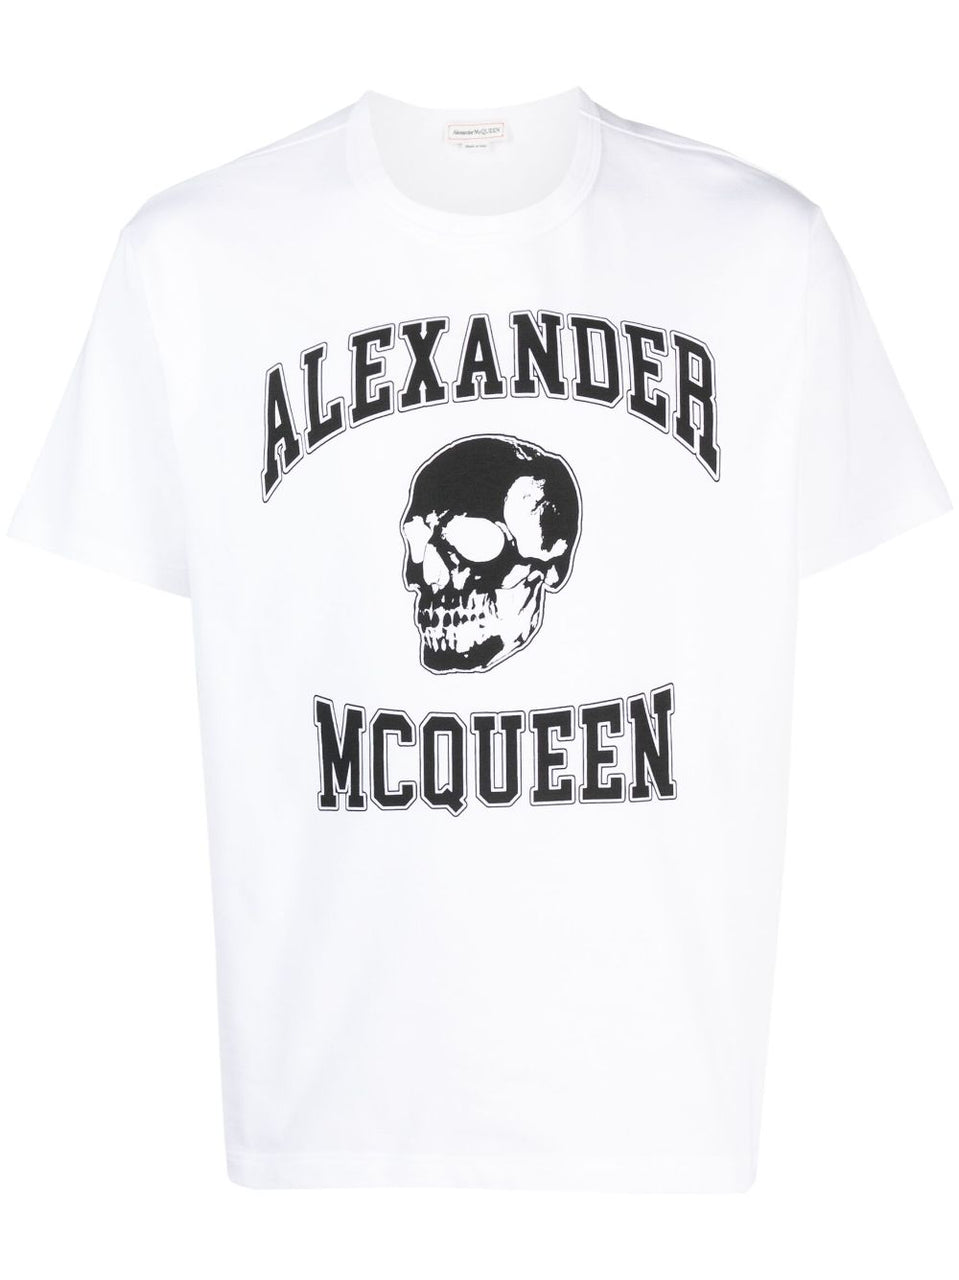 ALEXANDER MCQUEEN メンズ Tシャツ